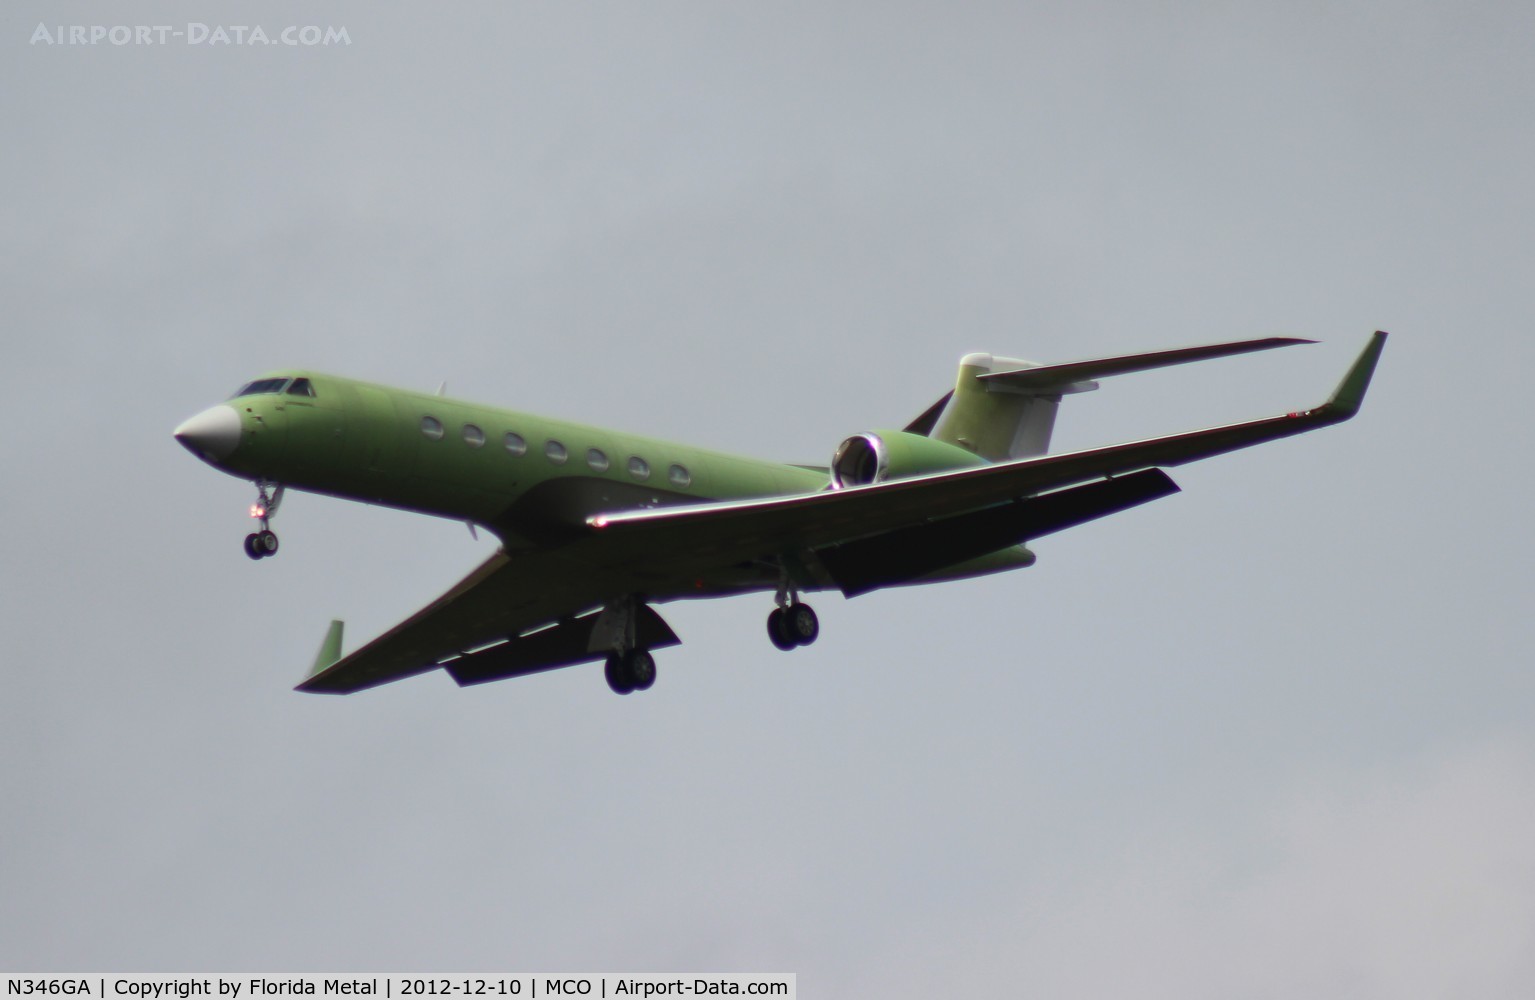 N346GA, Gulfstream Aerospace G550 C/N 5406, Brand new still green G550